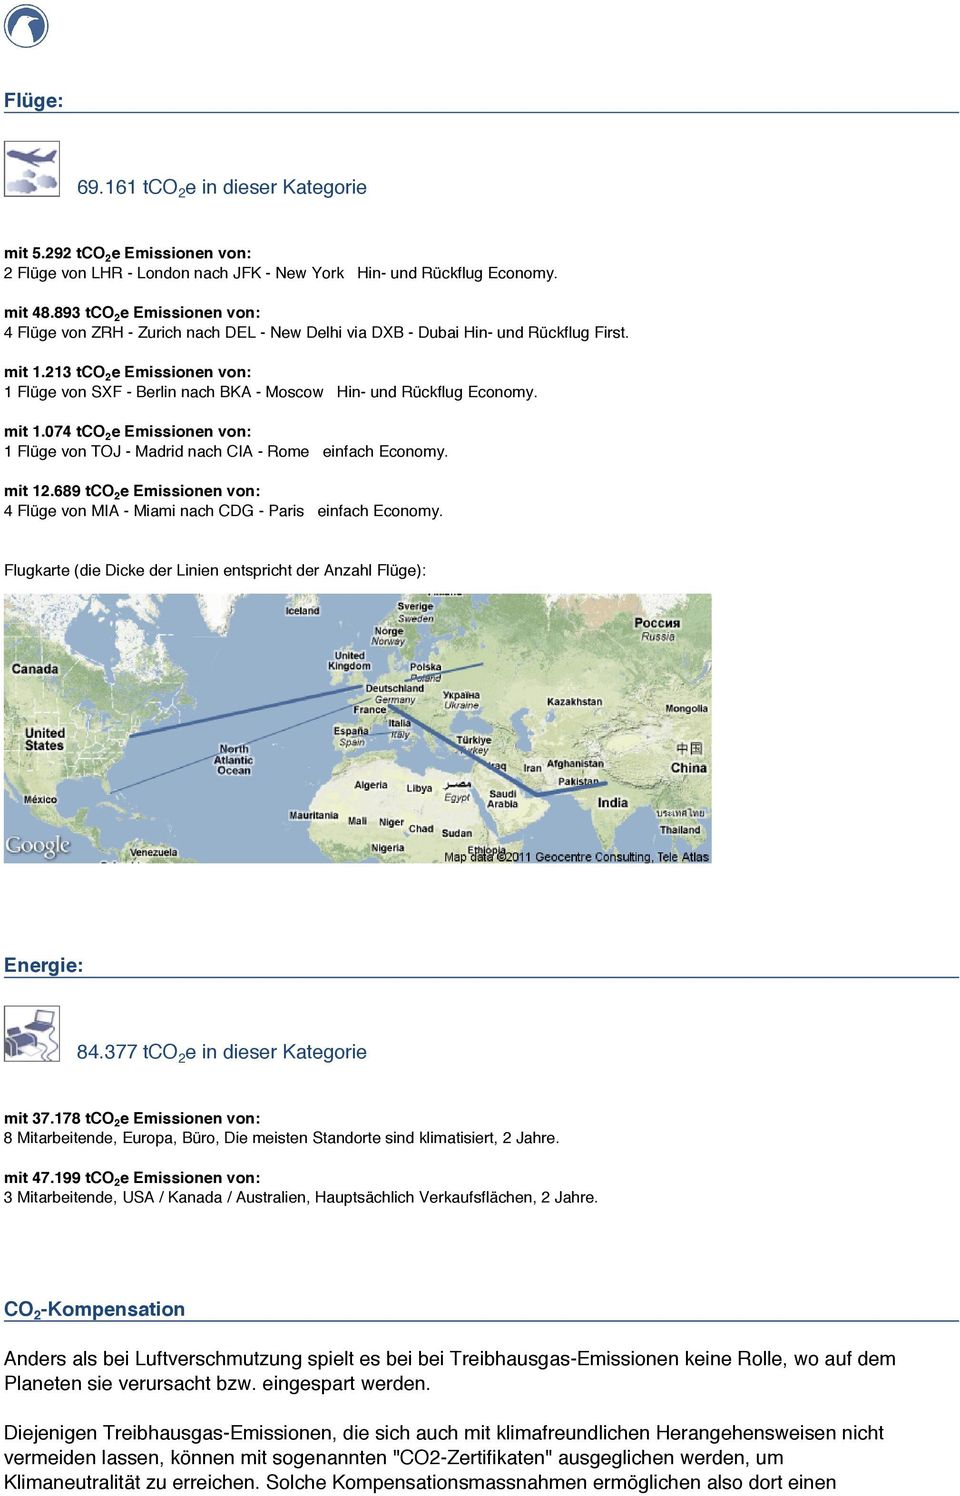 213 tco 2 e Emissionen von: 1 Flüge von SXF - Berlin nach BKA - Moscow Hin- und Rückflug Economy. mit 1.074 tco 2 e Emissionen von: 1 Flüge von TOJ - Madrid nach CIA - Rome einfach Economy. mit 12.